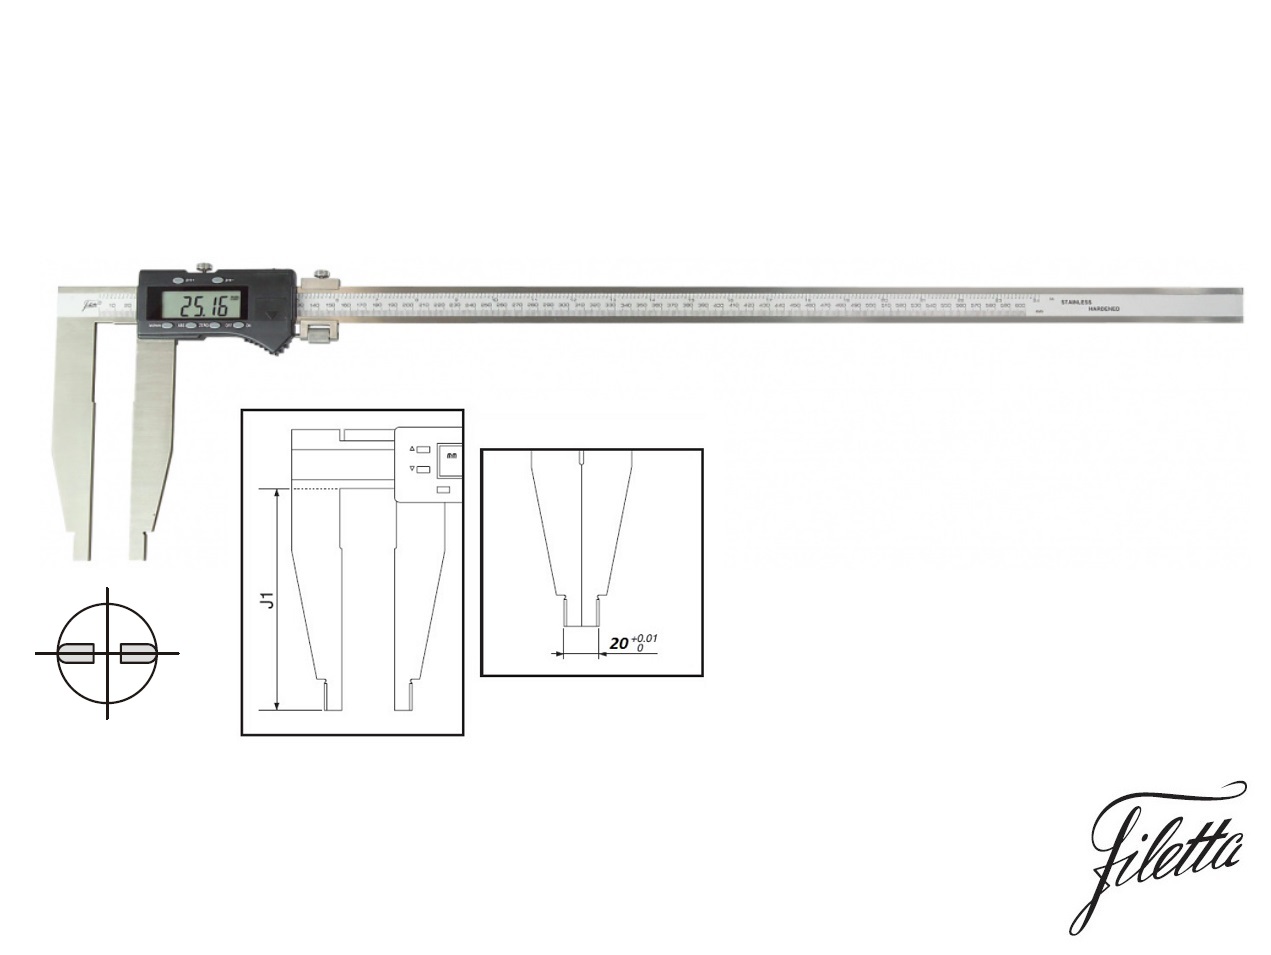 Digitální posuvné měřítko Filetta 0-1500 mm  bez nožíků, s měřicími čelistmi 200 mm